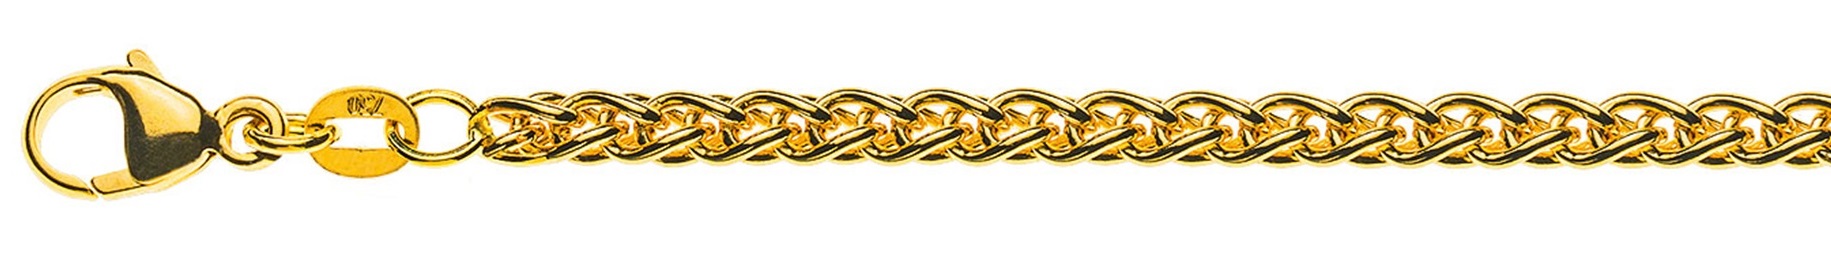 AURONOS Prestige Collier chaîne en or jaune 18K 55cm 3.3mm